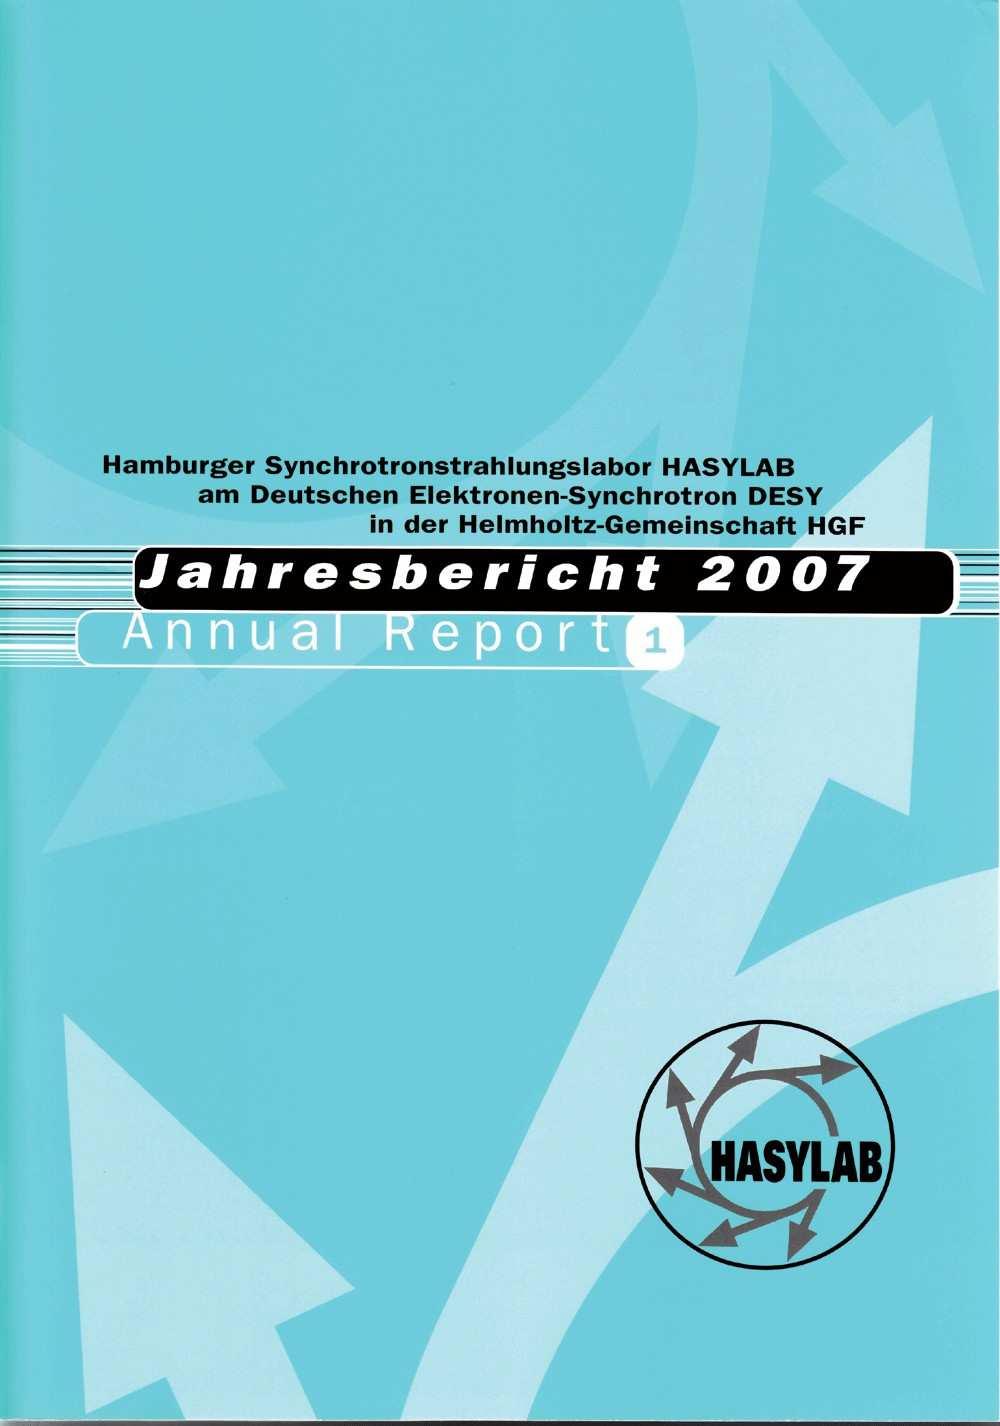 Forschung mit Photonen (a) Abbildung 7: Der traditionelle HASYLAB Jahresbericht (a), der im Jahr 2007 auf 2500 Seiten